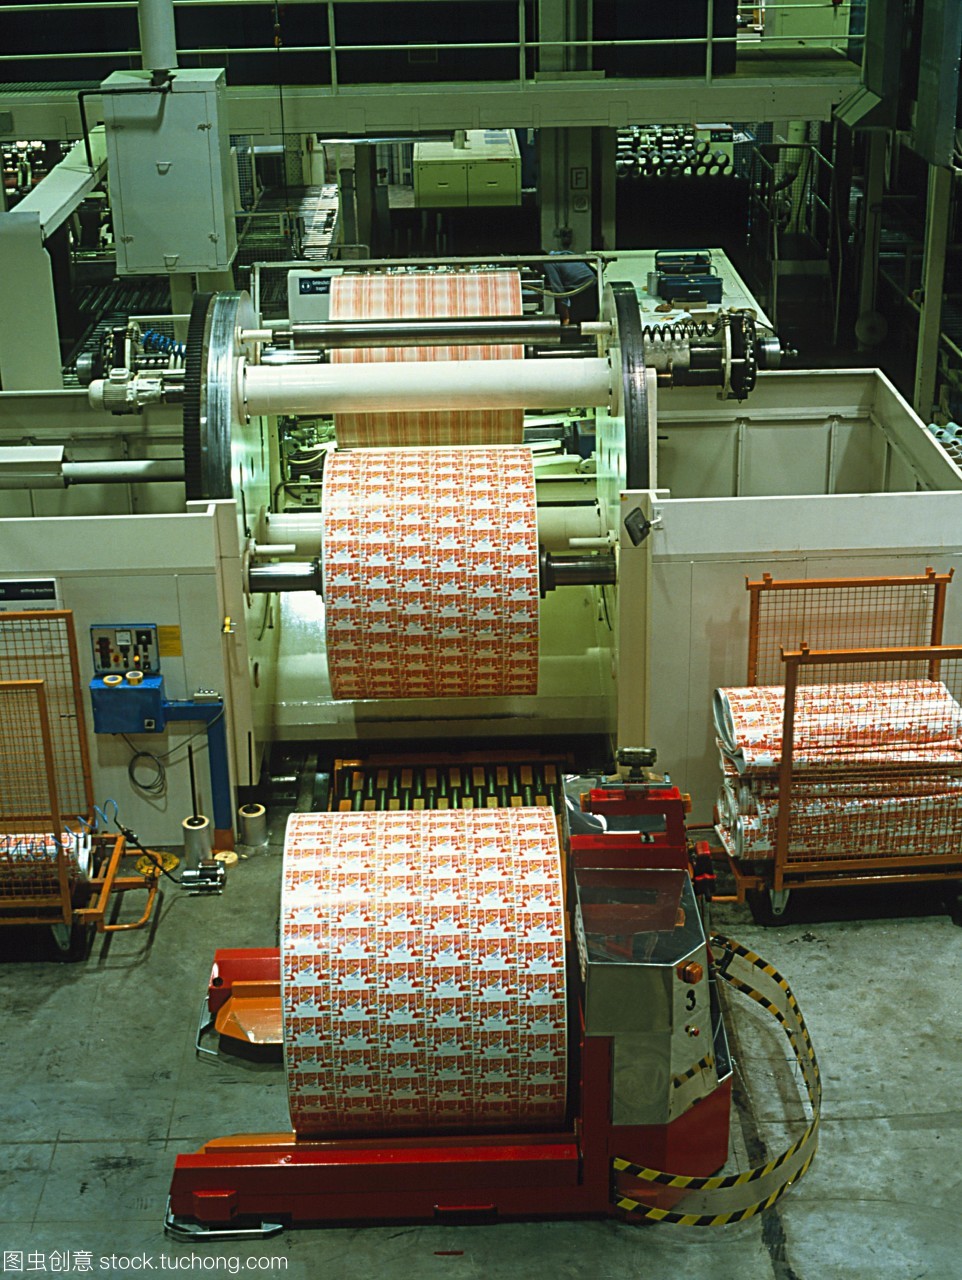 机器人车。红色机器人车辆运输一卷纸印花工厂。完成卷被从生产线上部中心为存储仓库将用于制造食品包装纸板。机器人是一个自动引导车辆形成工厂的电脑一体机制造过程的一部分。机器人的使用允许灵活的核电站周围流动的材料。